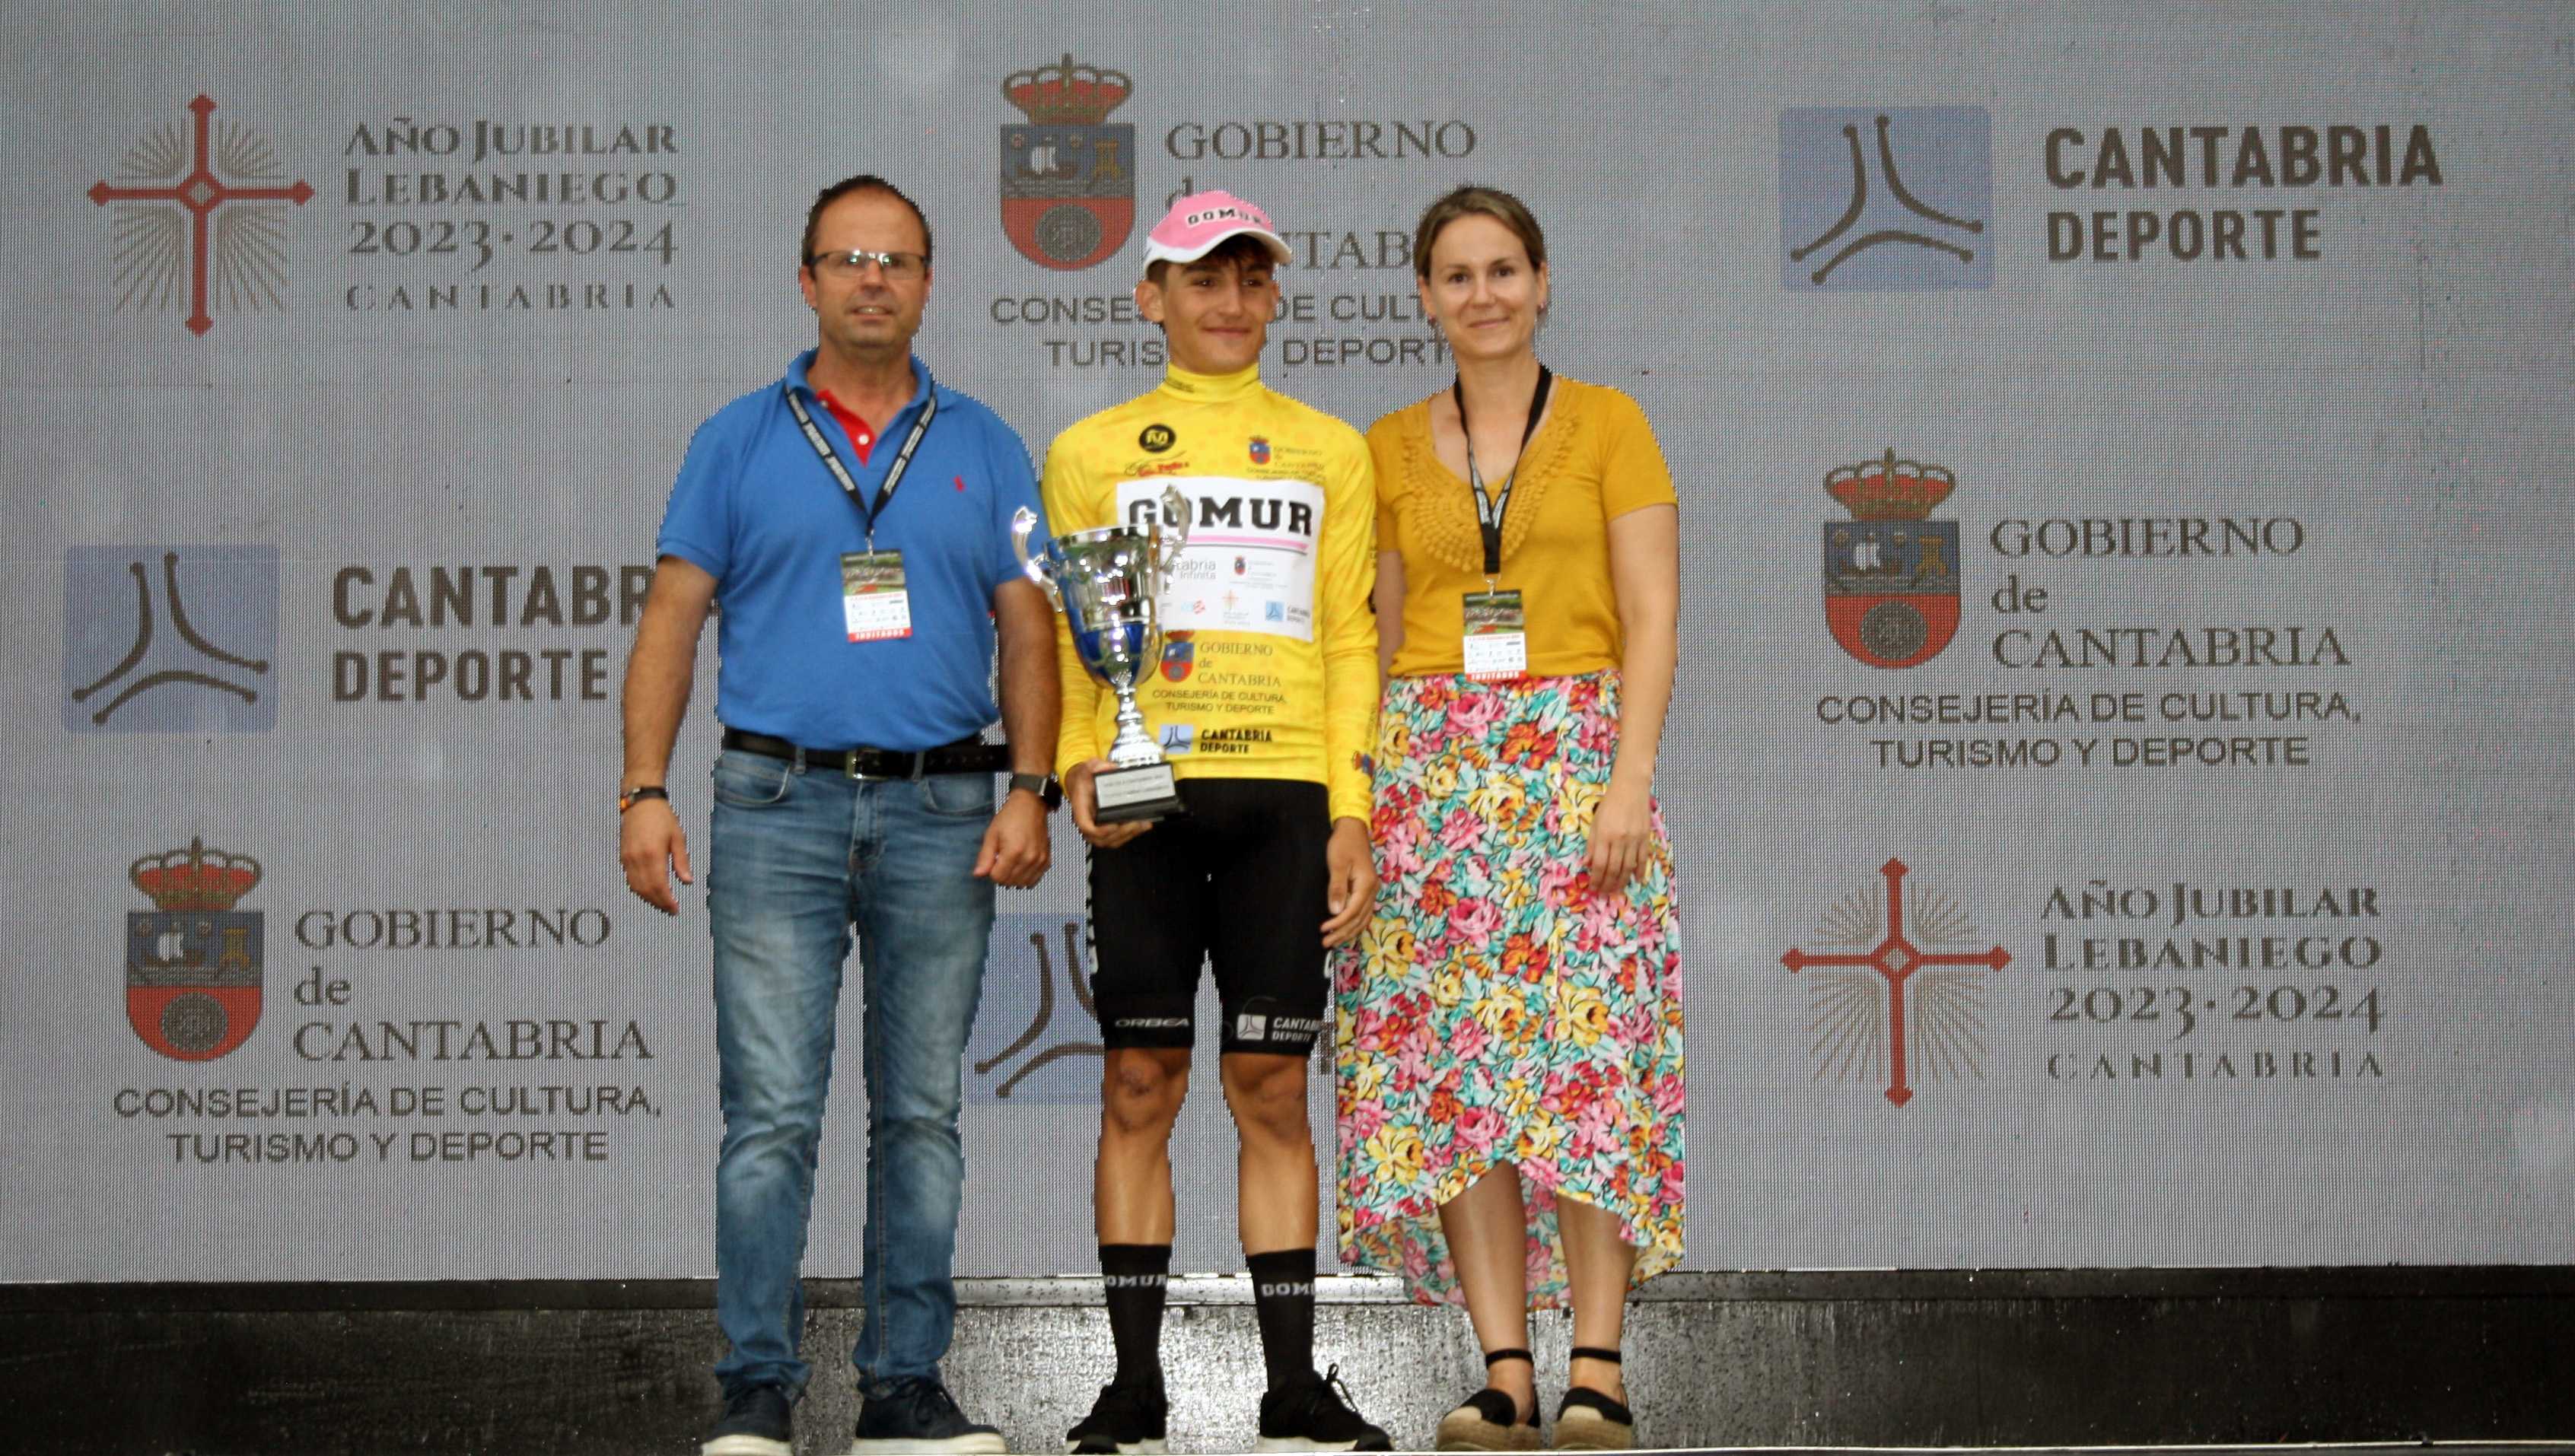 Daniel Caviá (Gomur) gana con fuerza en Vioño y es el primer líder de la Vuelta a Cantabria